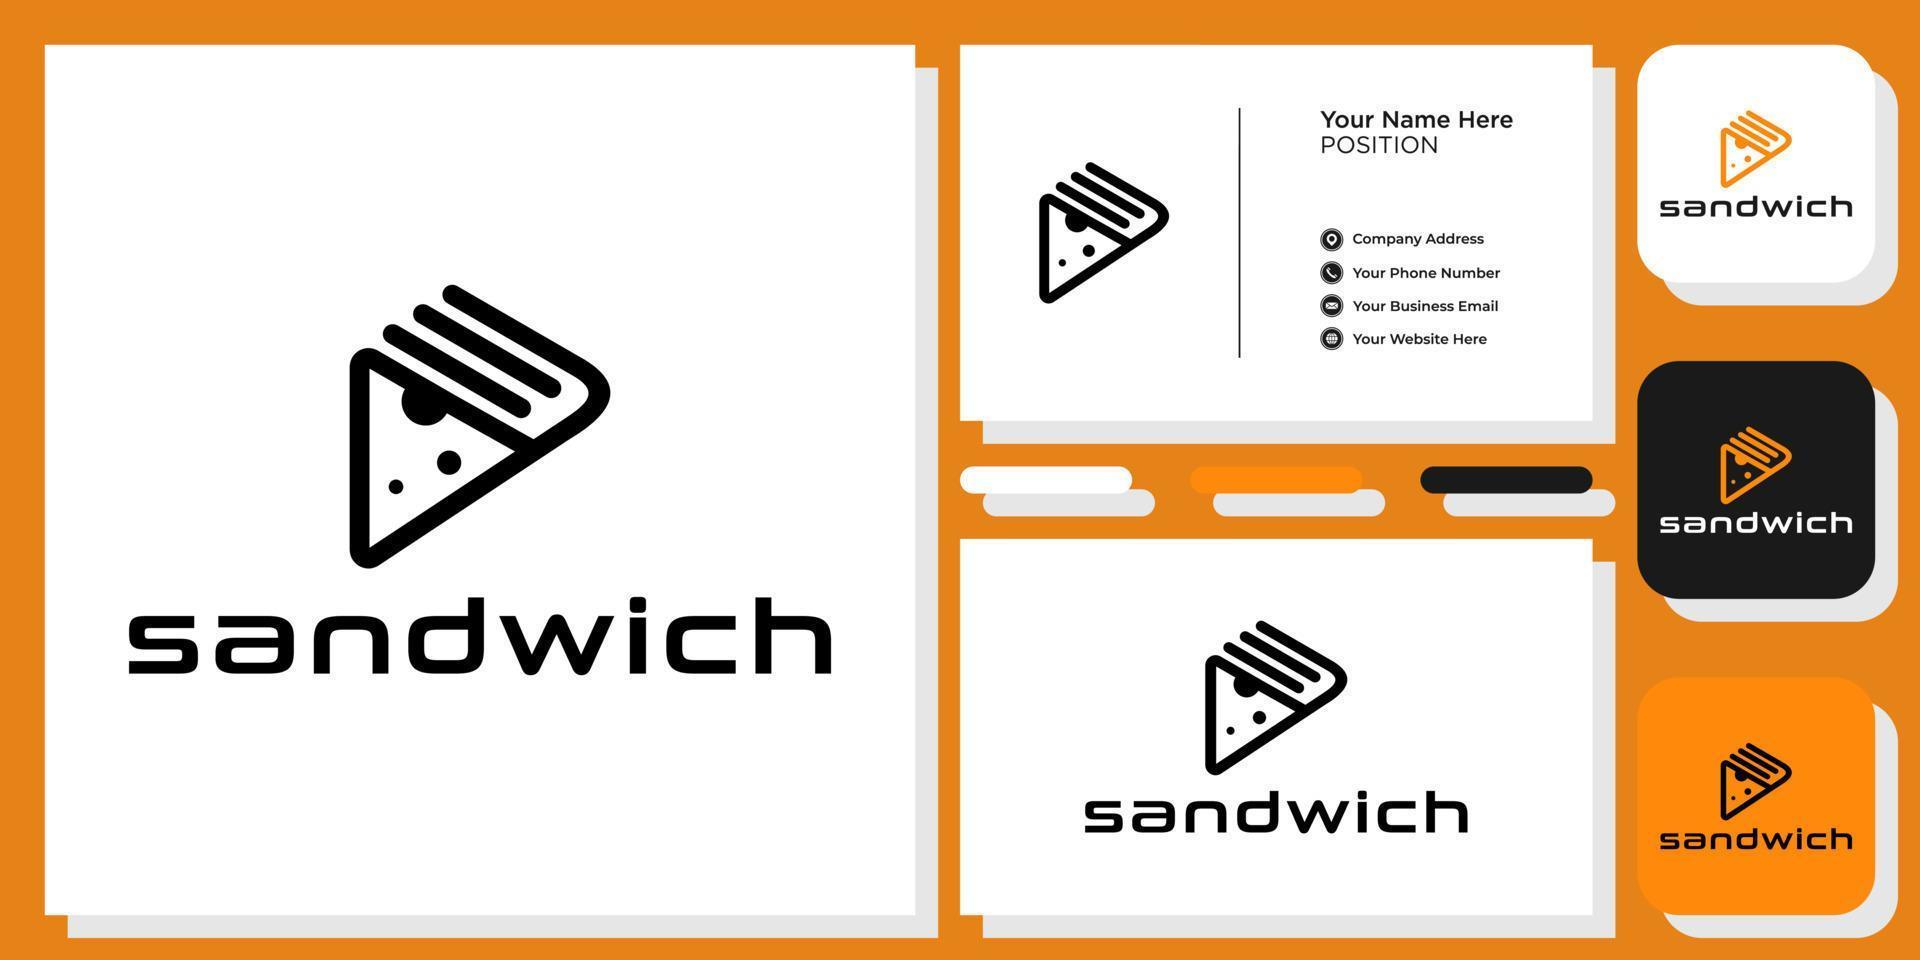 smörgås symbol triangel mat ost måltid med visitkortsmall vektor